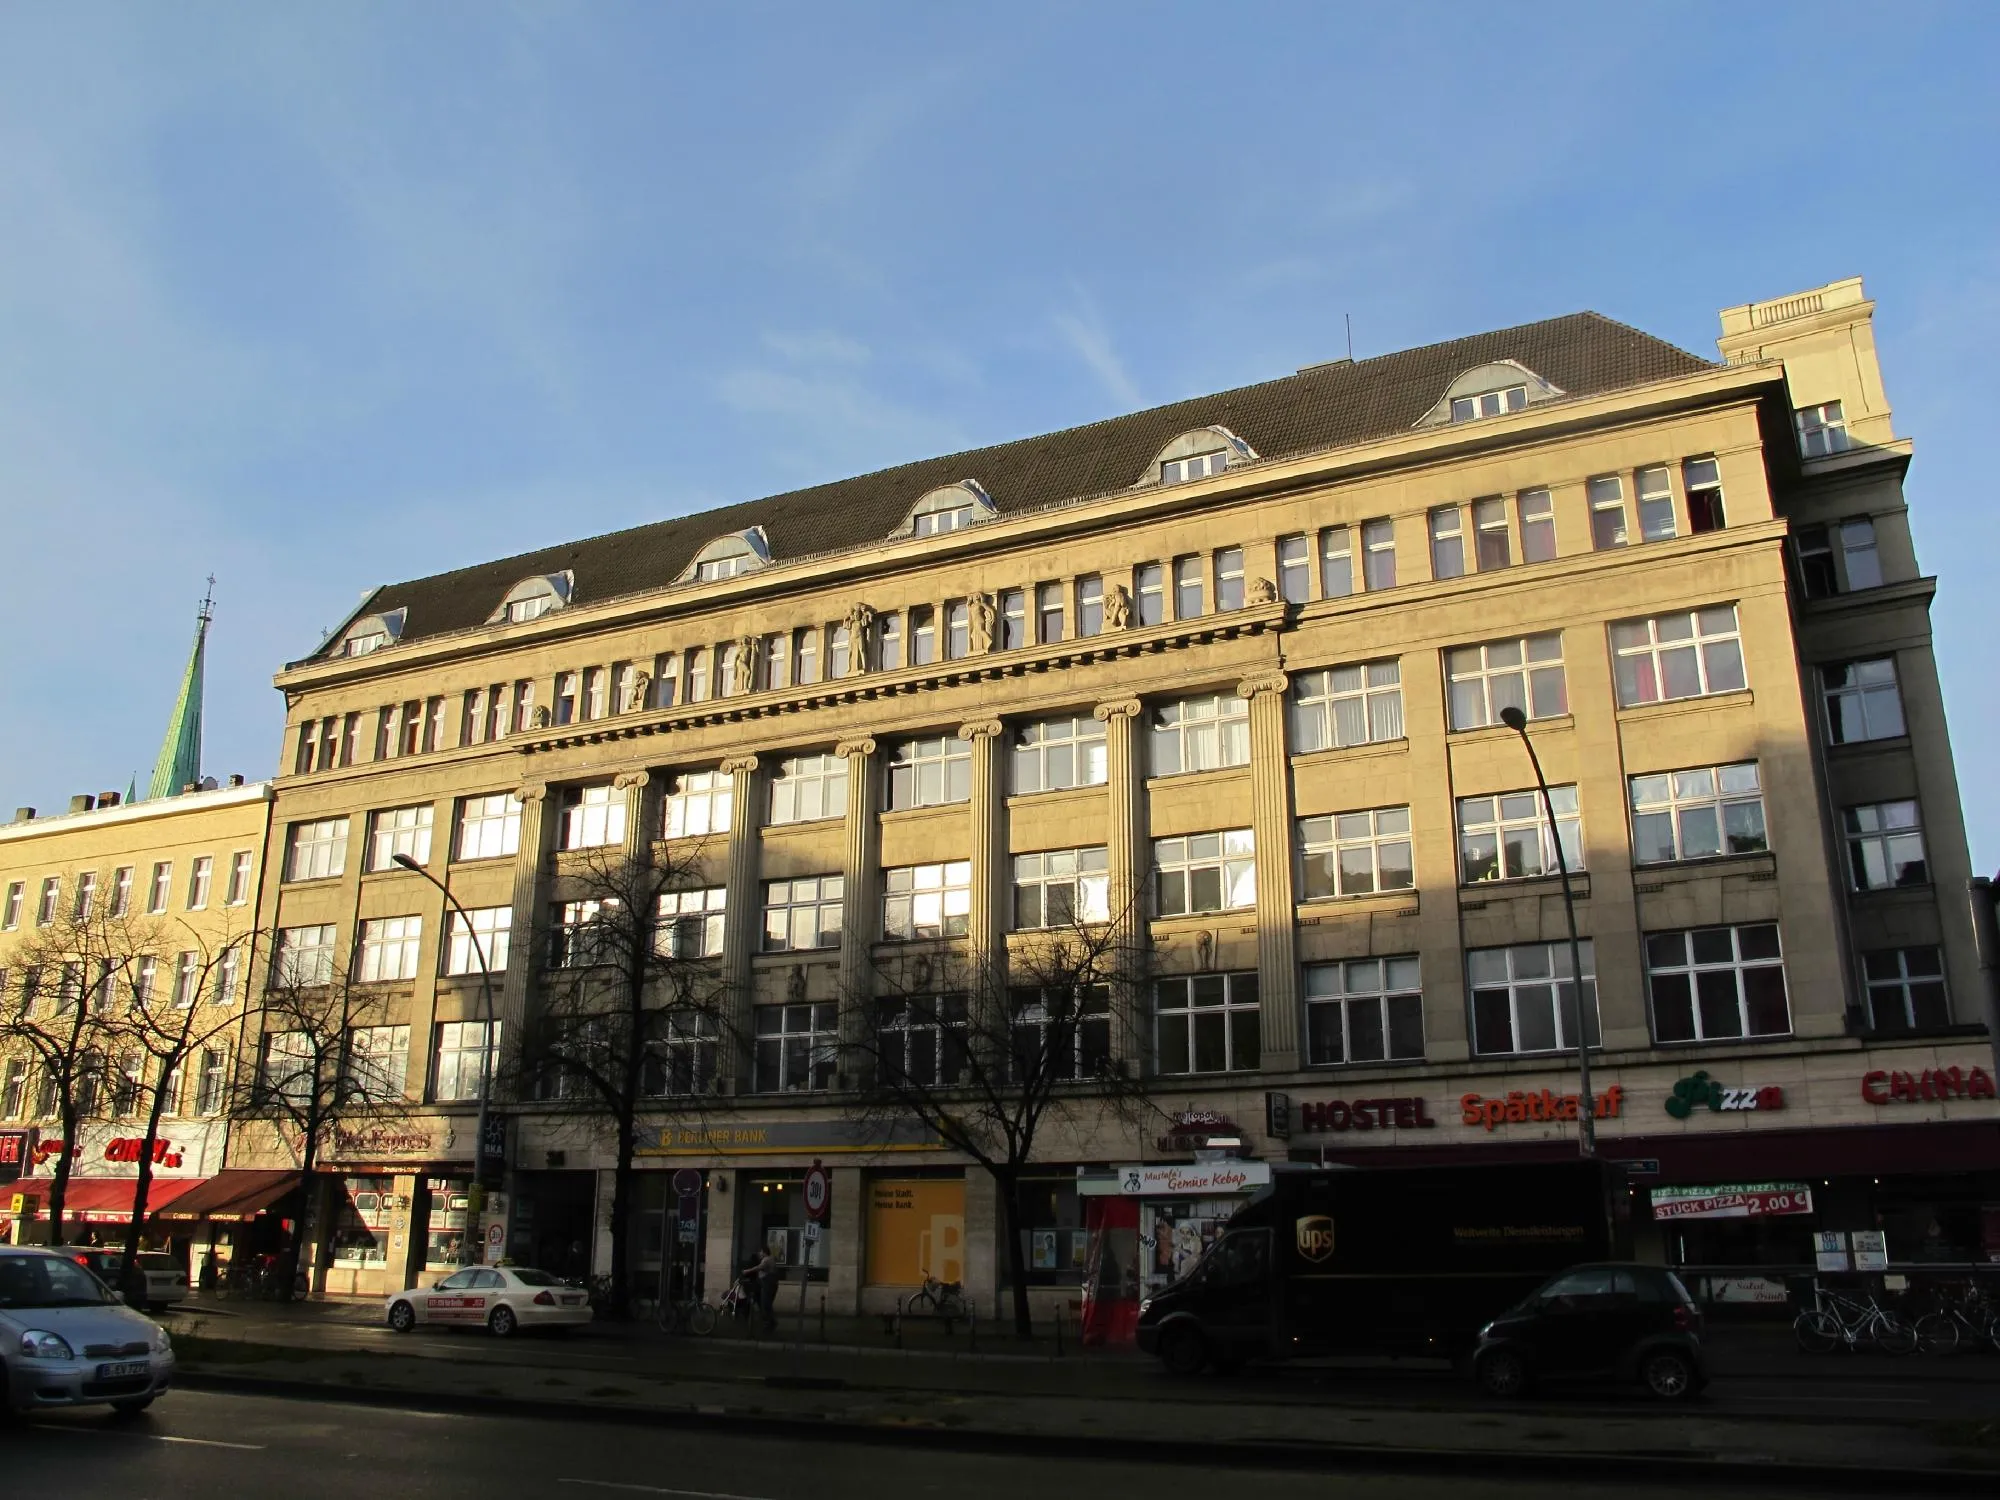 Building hotel Metropol Hostel Berlin